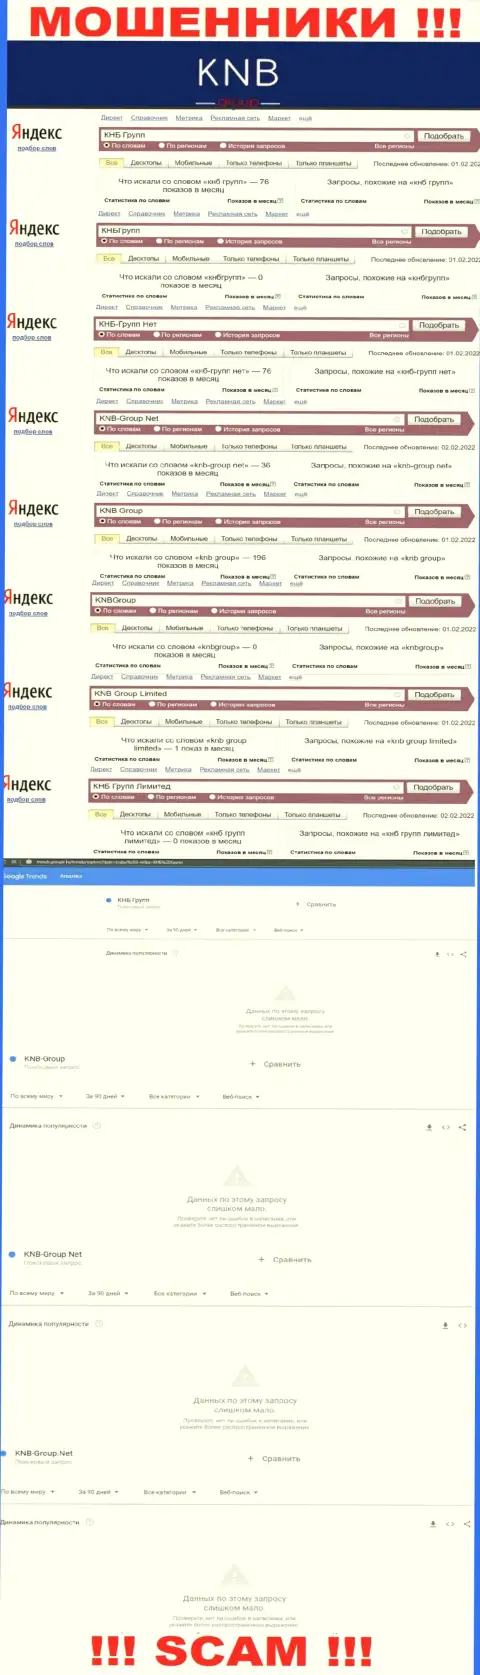 Скриншот статистики онлайн запросов по мошеннической компании KNB-Group Net